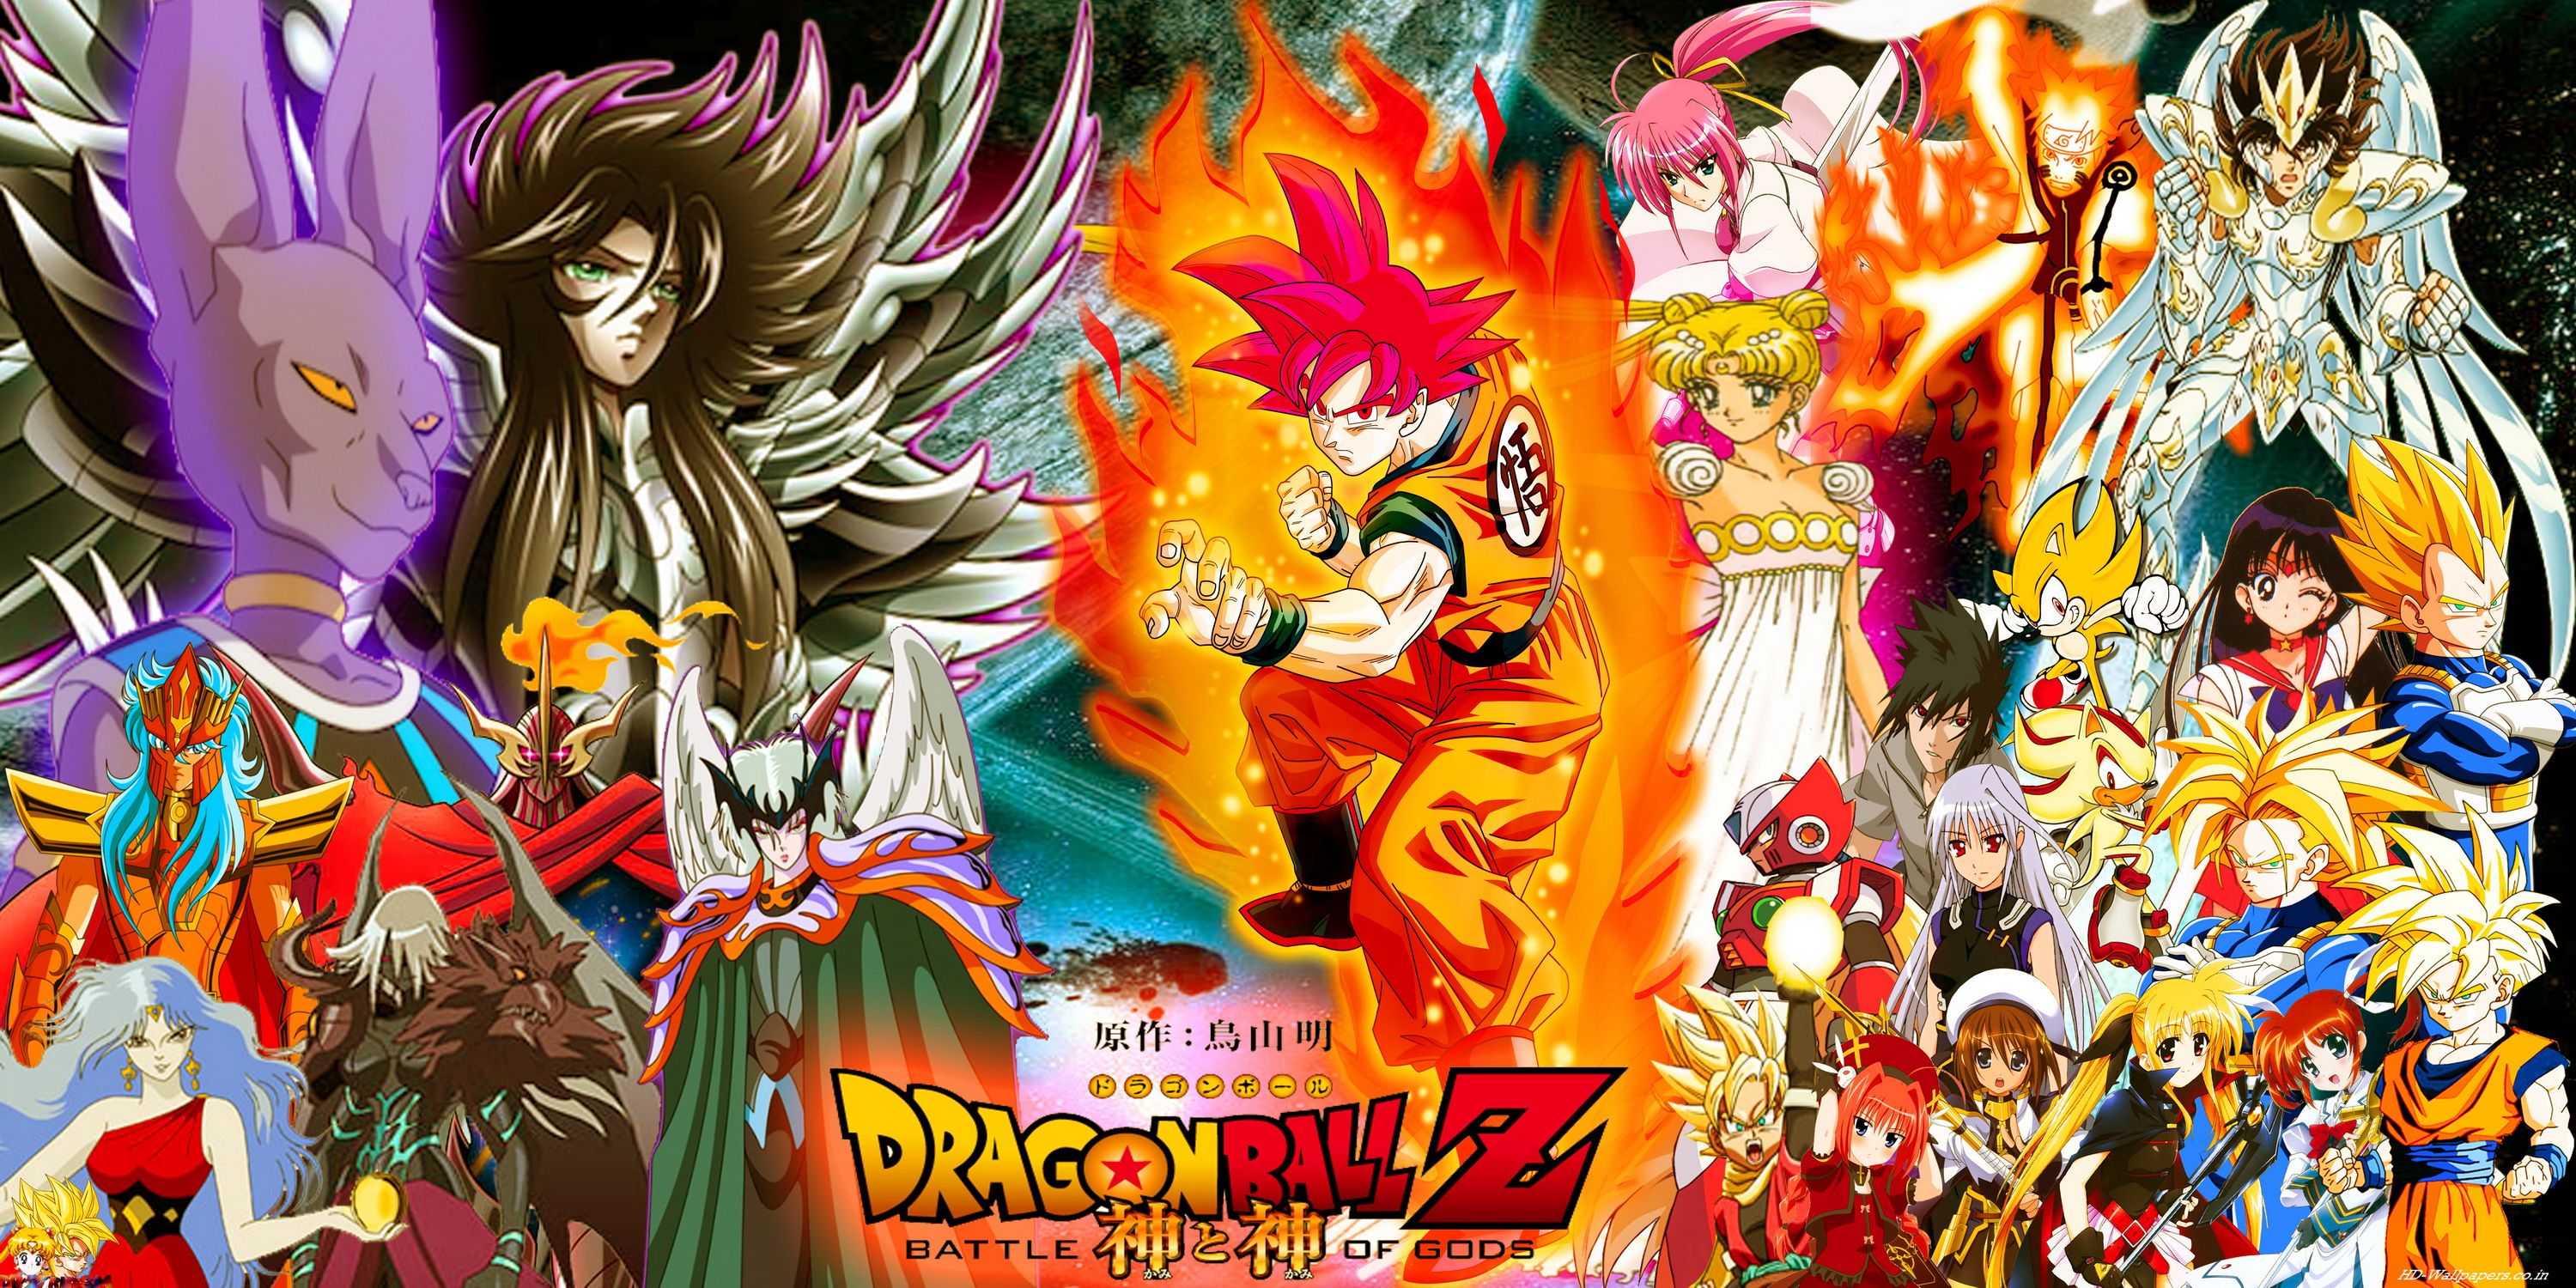 Dragon Ball Z Wallpaper. Dragonball Z